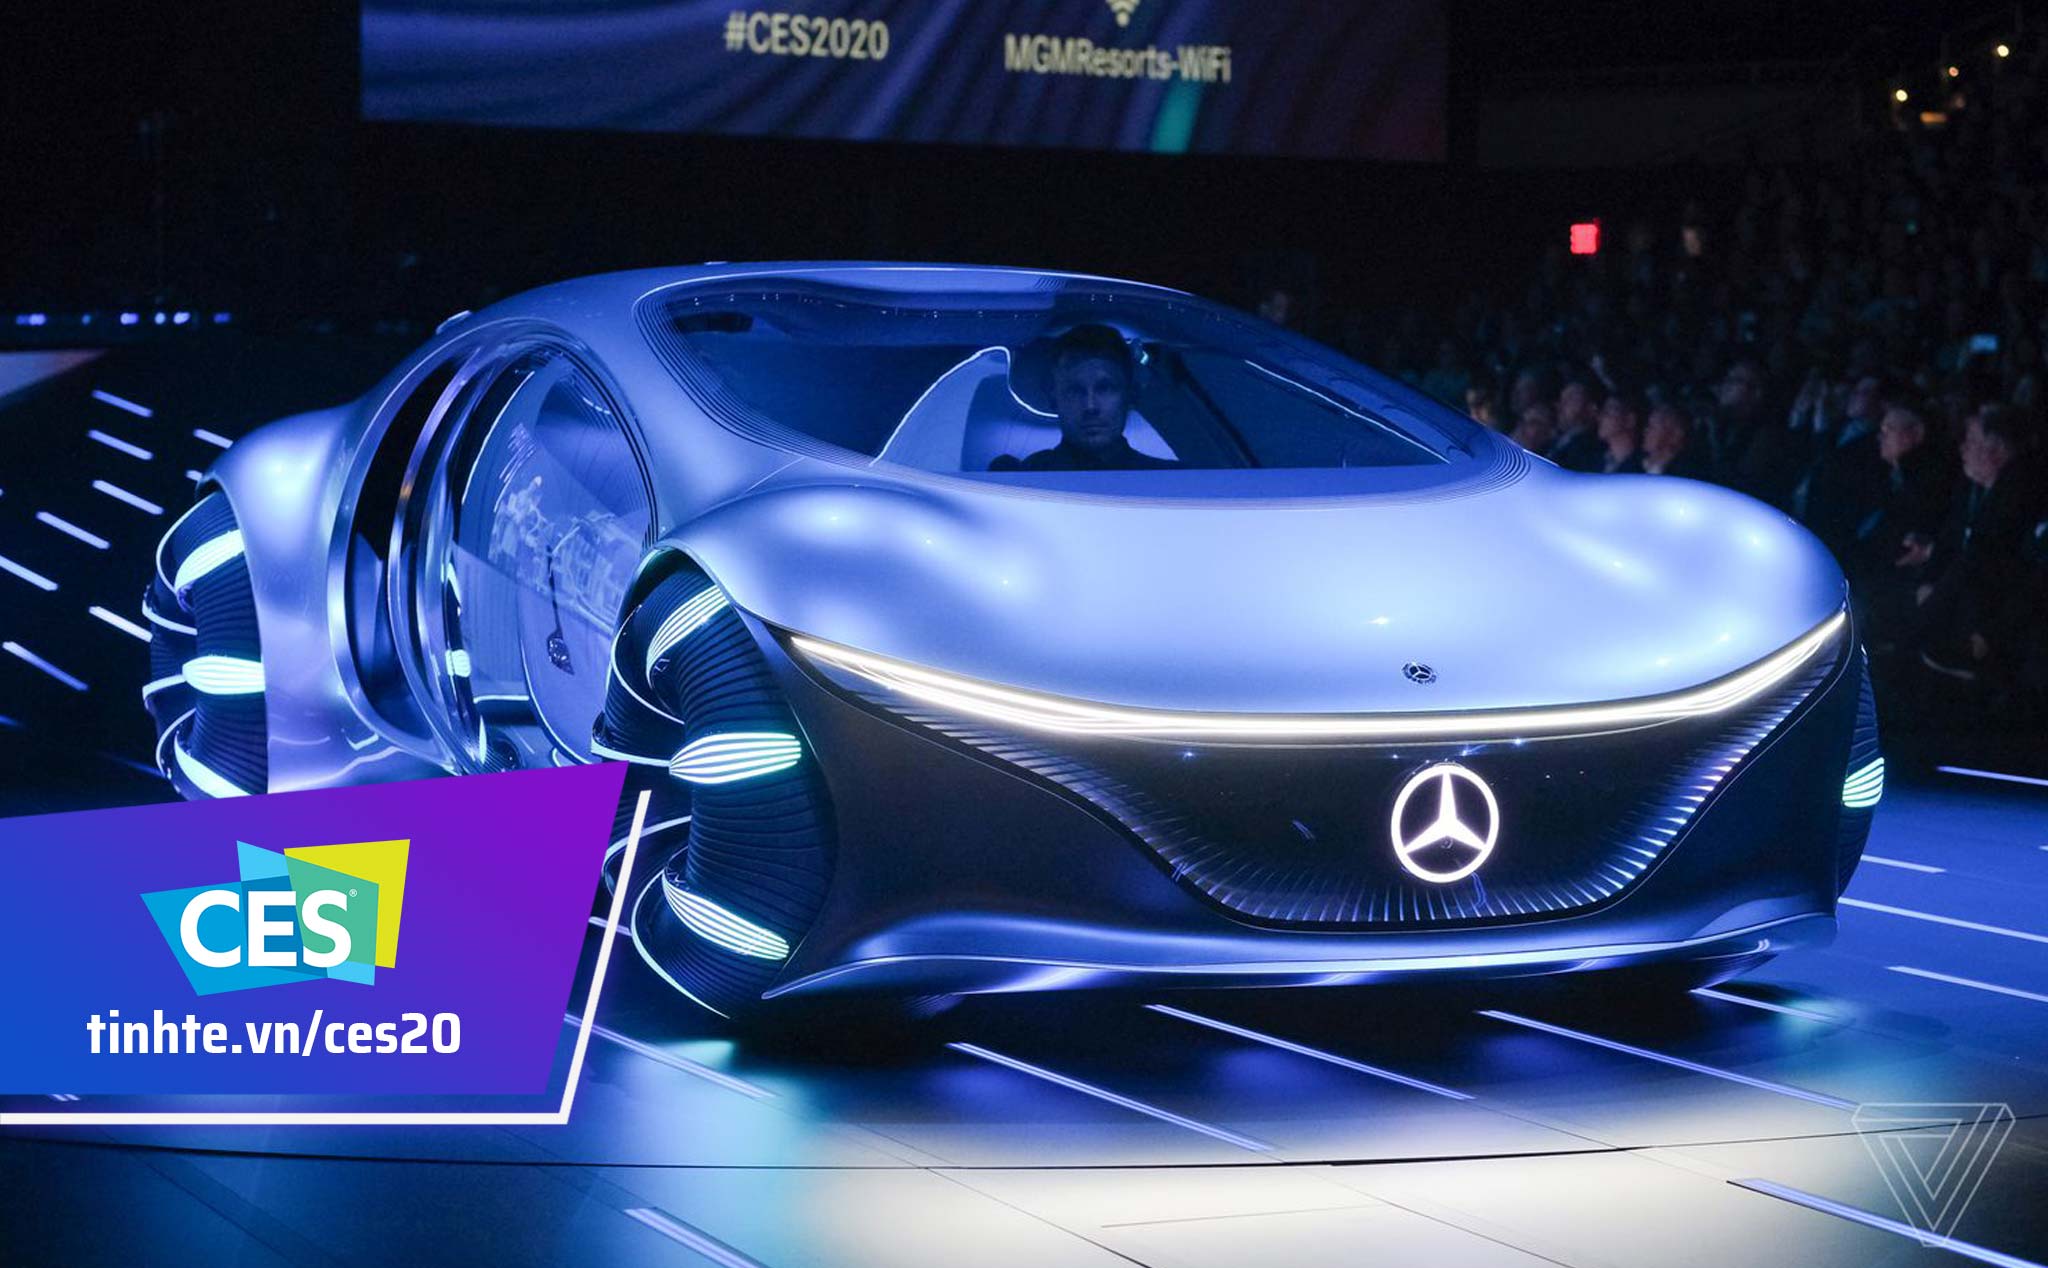 Mercedes-Benz Vision AVTR là chiếc xe tương lai với thiết kế độc đáo và công nghệ tiên tiến. Được lấy cảm hứng từ bộ phim Avatar, chiếc xe này mang đến cho người lái trải nghiệm đầy tinh tế. Với khả năng tự lái và tính năng thân thiện với môi trường, Mercedes-Benz Vision AVTR đúng là một thành tựu đáng tự hào của công nghệ ô tô.